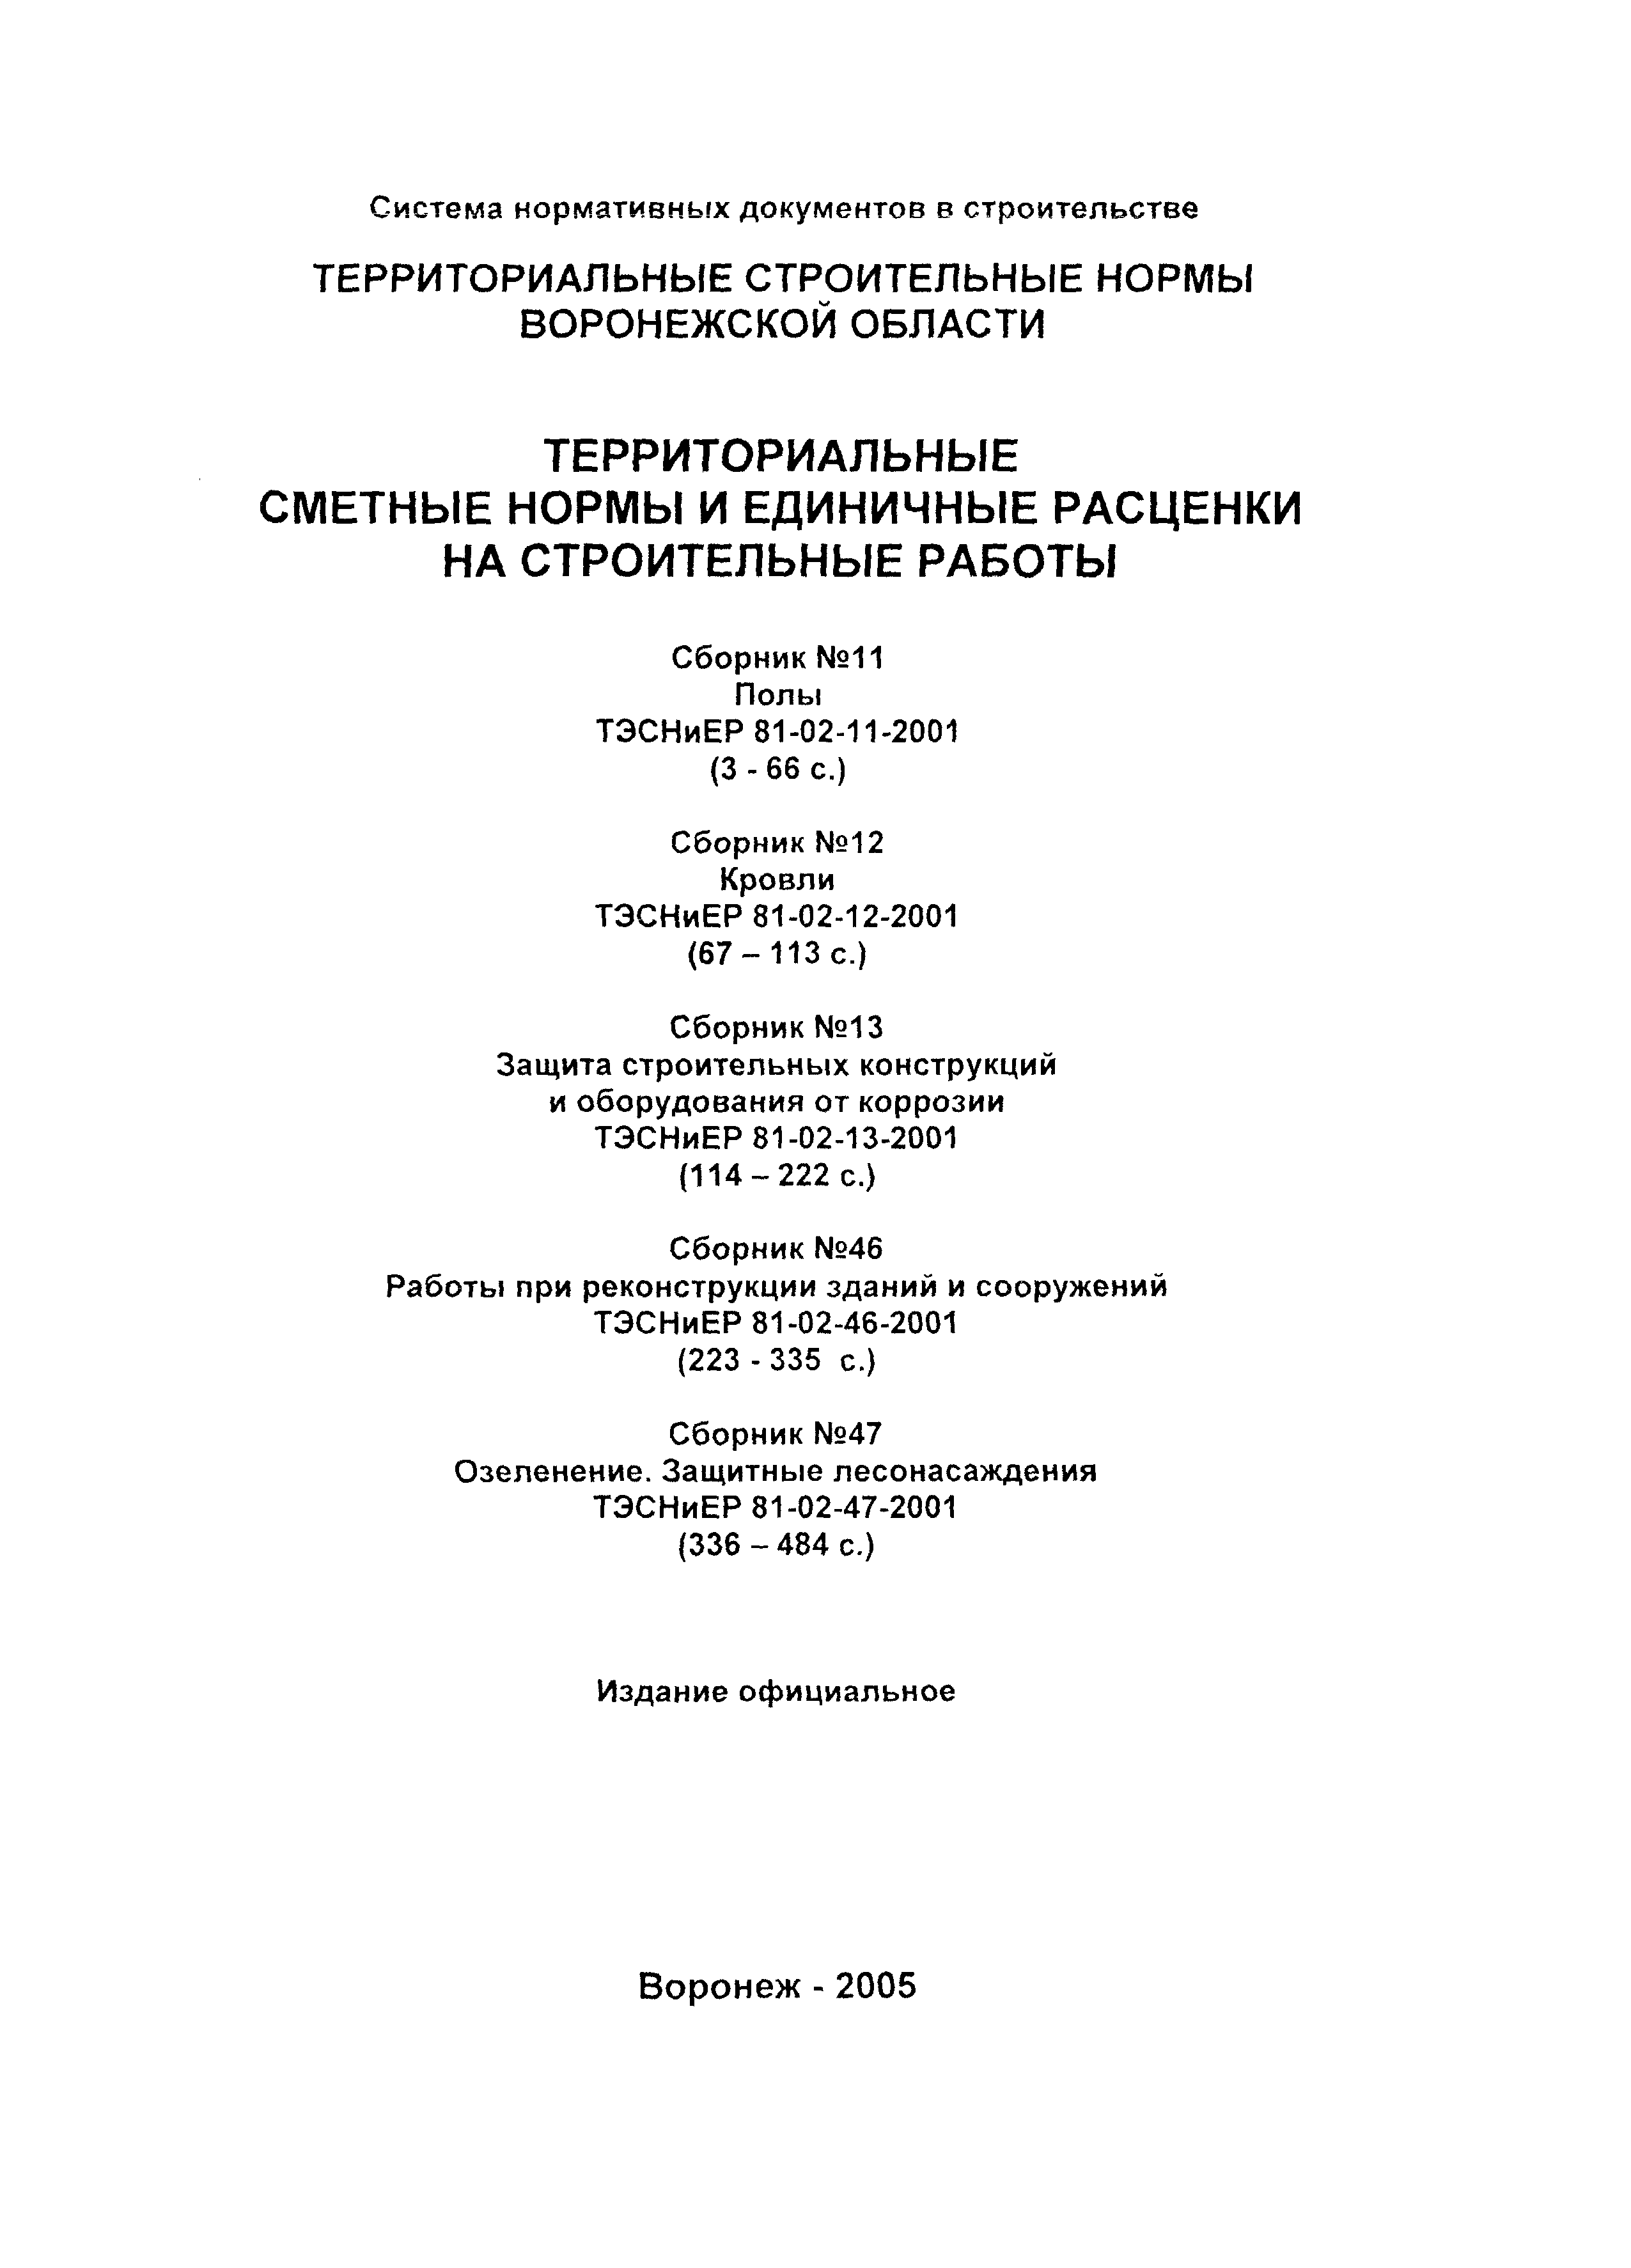 ТЭСНиЕР Воронежской области 81-02-11-2001